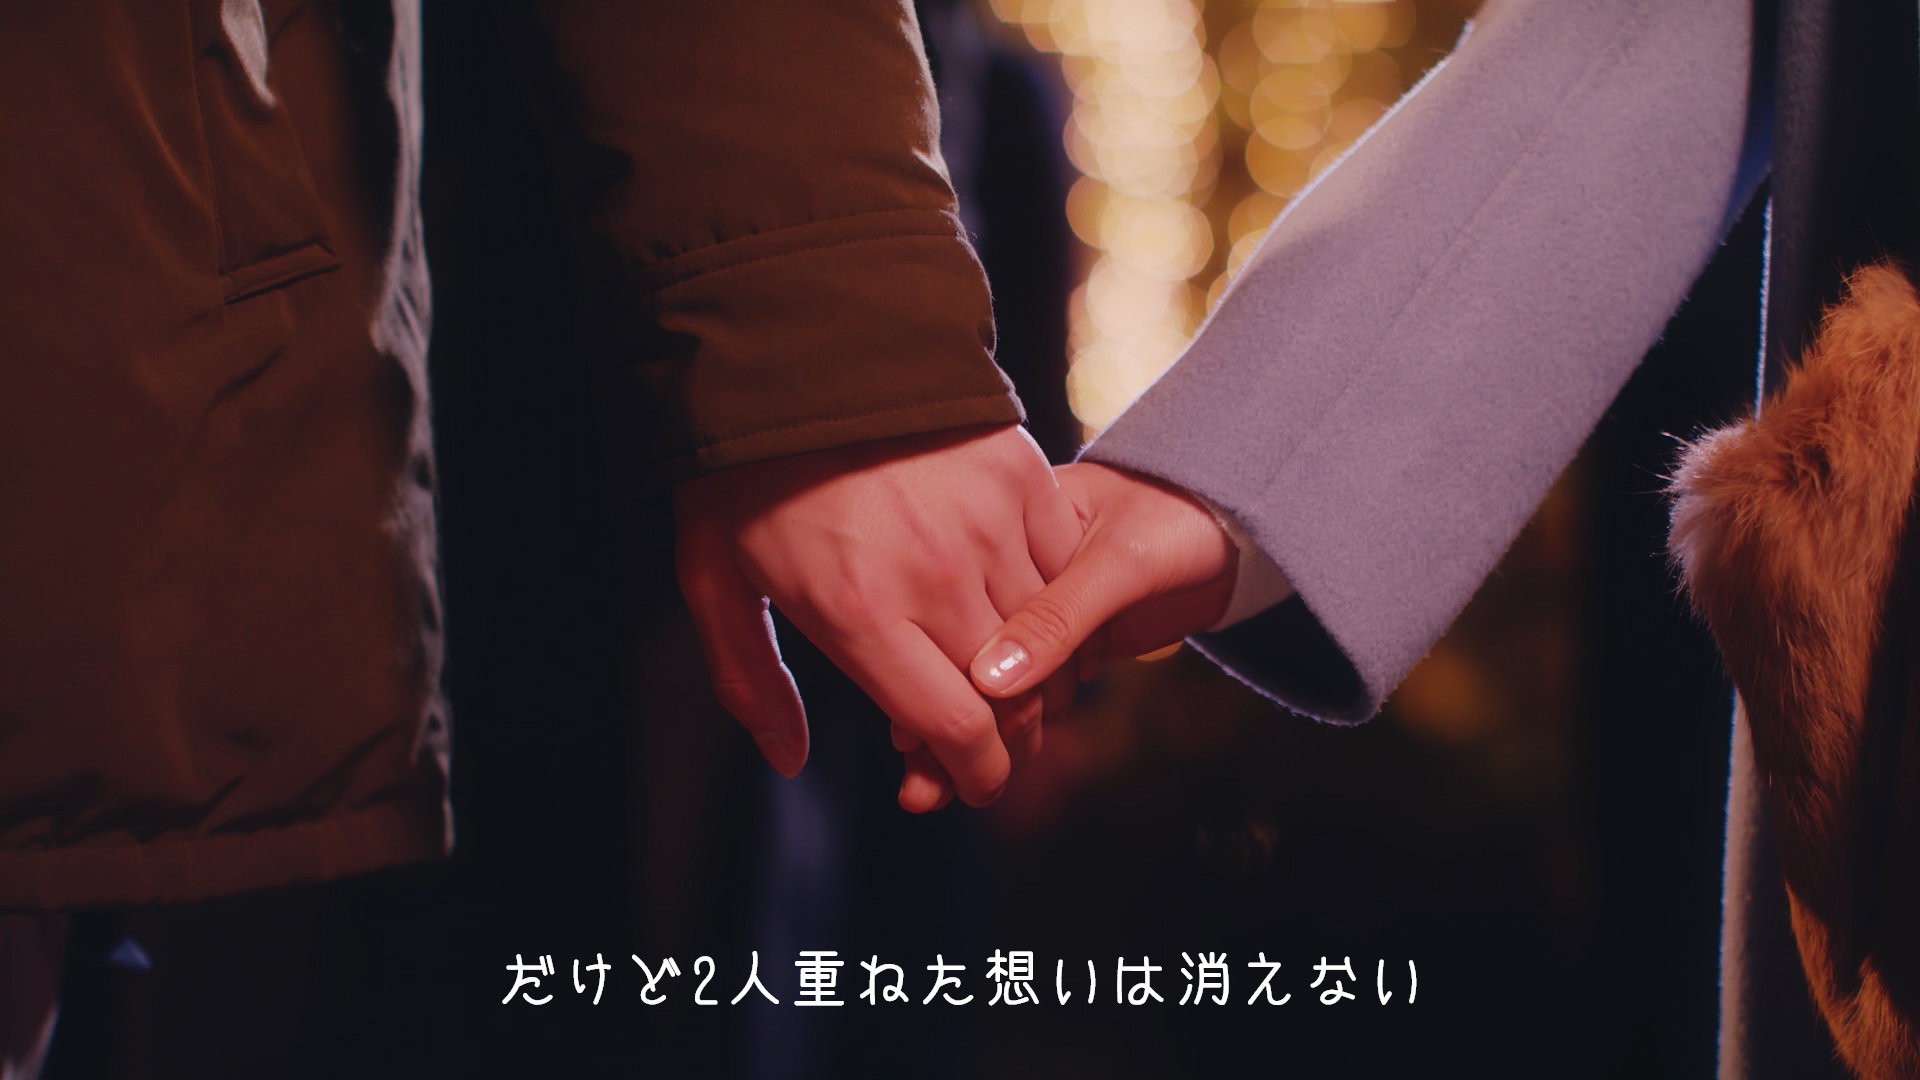 RIRI×清水翔太のコラボが“両片思い”を応援 横浜赤レンガ倉庫に「＃手つなぎポスター」出現